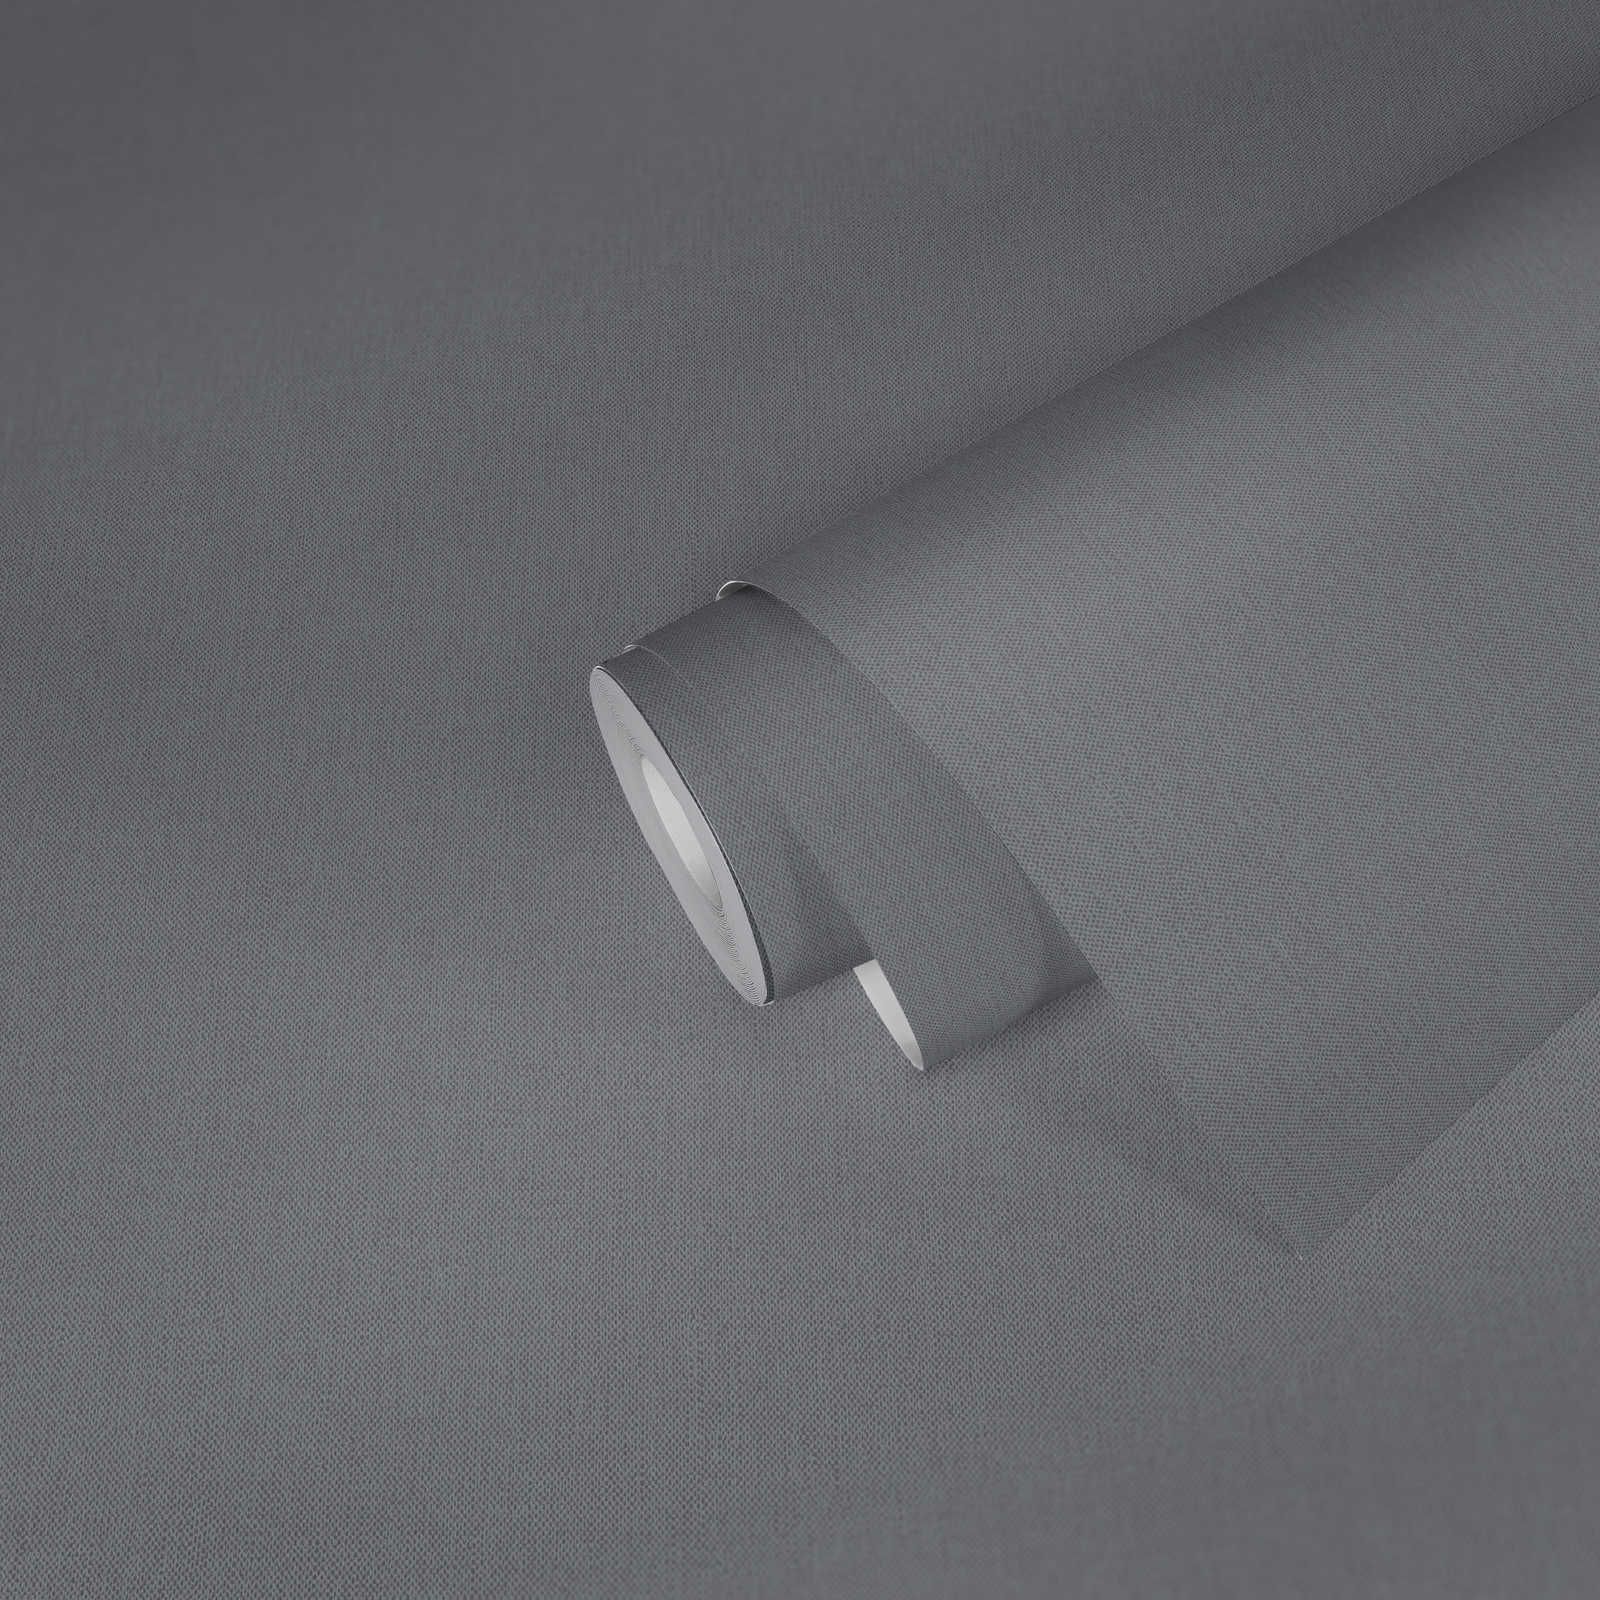             Papel pintado de aspecto de lino gris con estructura de tela y superficie mate
        